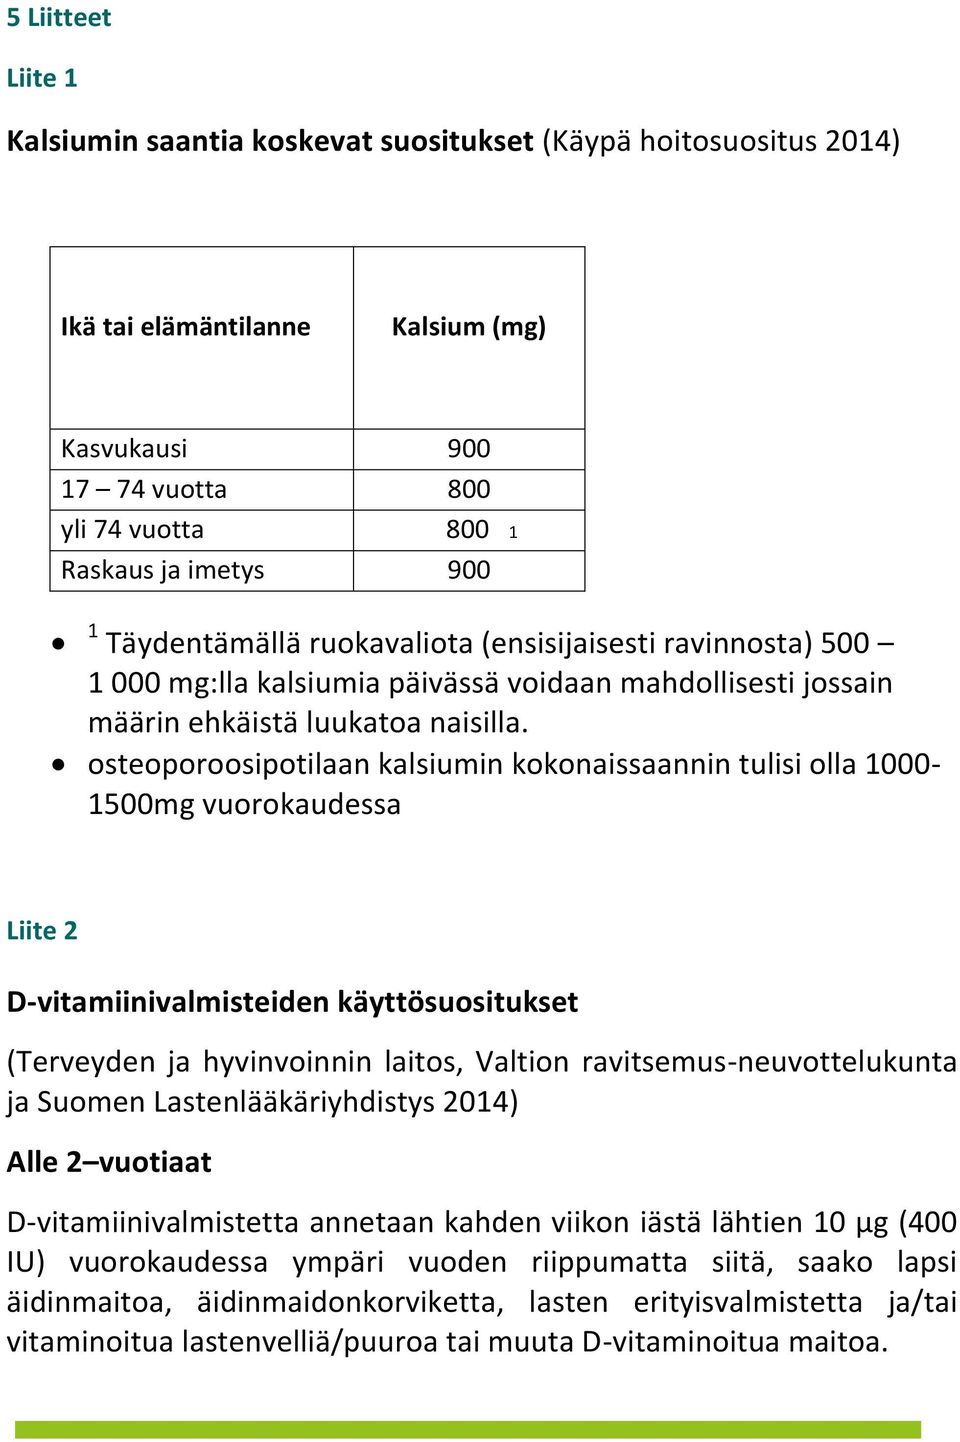 osteoporoosipotilaan kalsiumin kokonaissaannin tulisi olla 1000-1500mg vuorokaudessa Liite 2 D-vitamiinivalmisteiden käyttösuositukset (Terveyden ja hyvinvoinnin laitos, Valtion